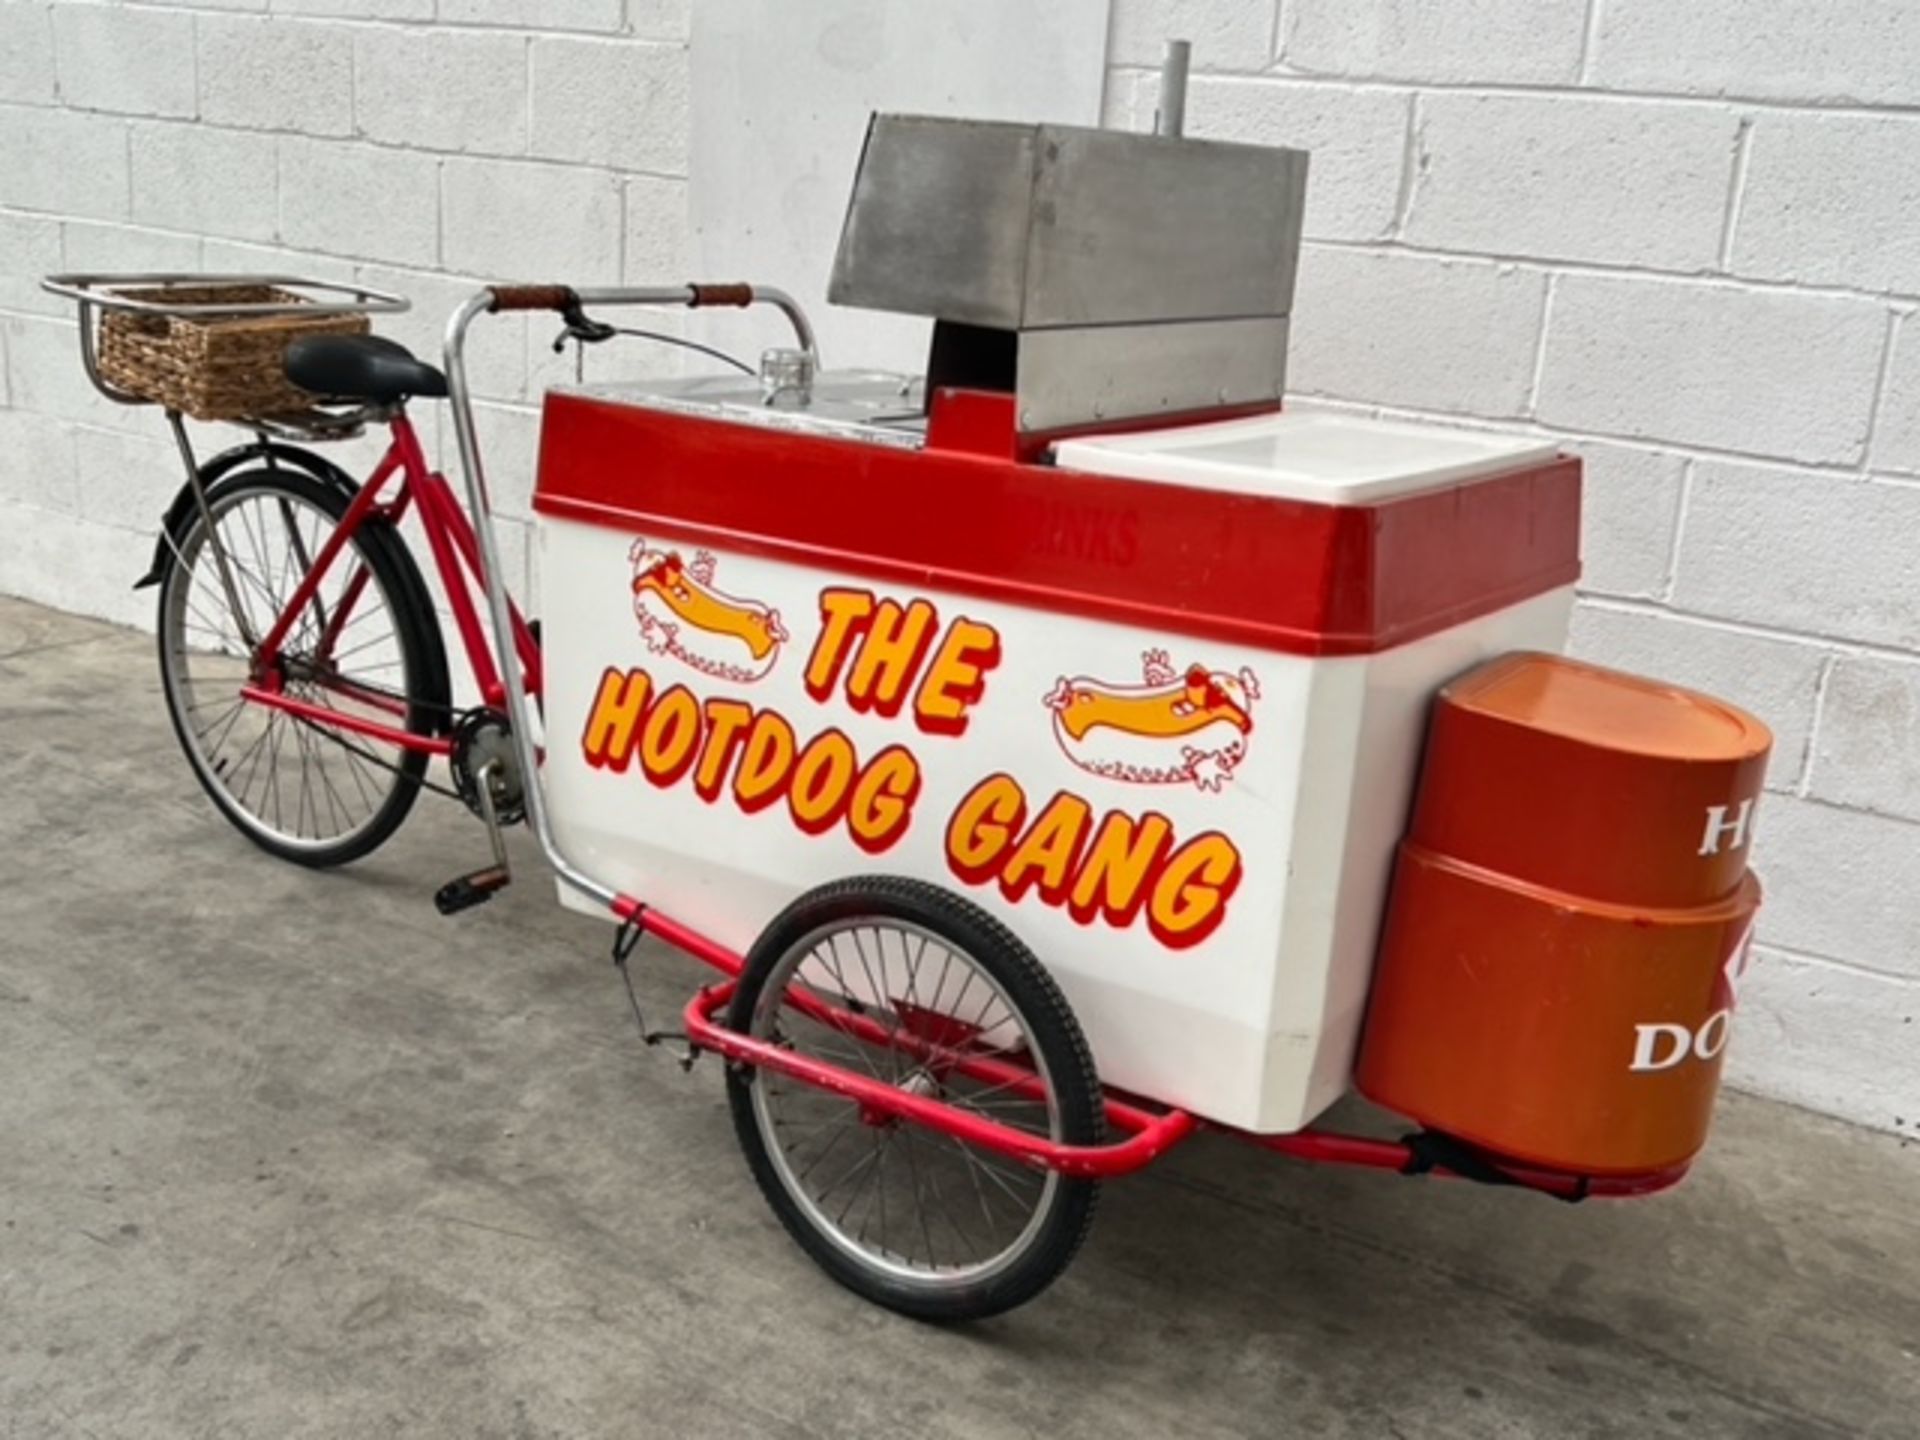 Hot Dog Catering Bike *NO VAT* - Image 2 of 10